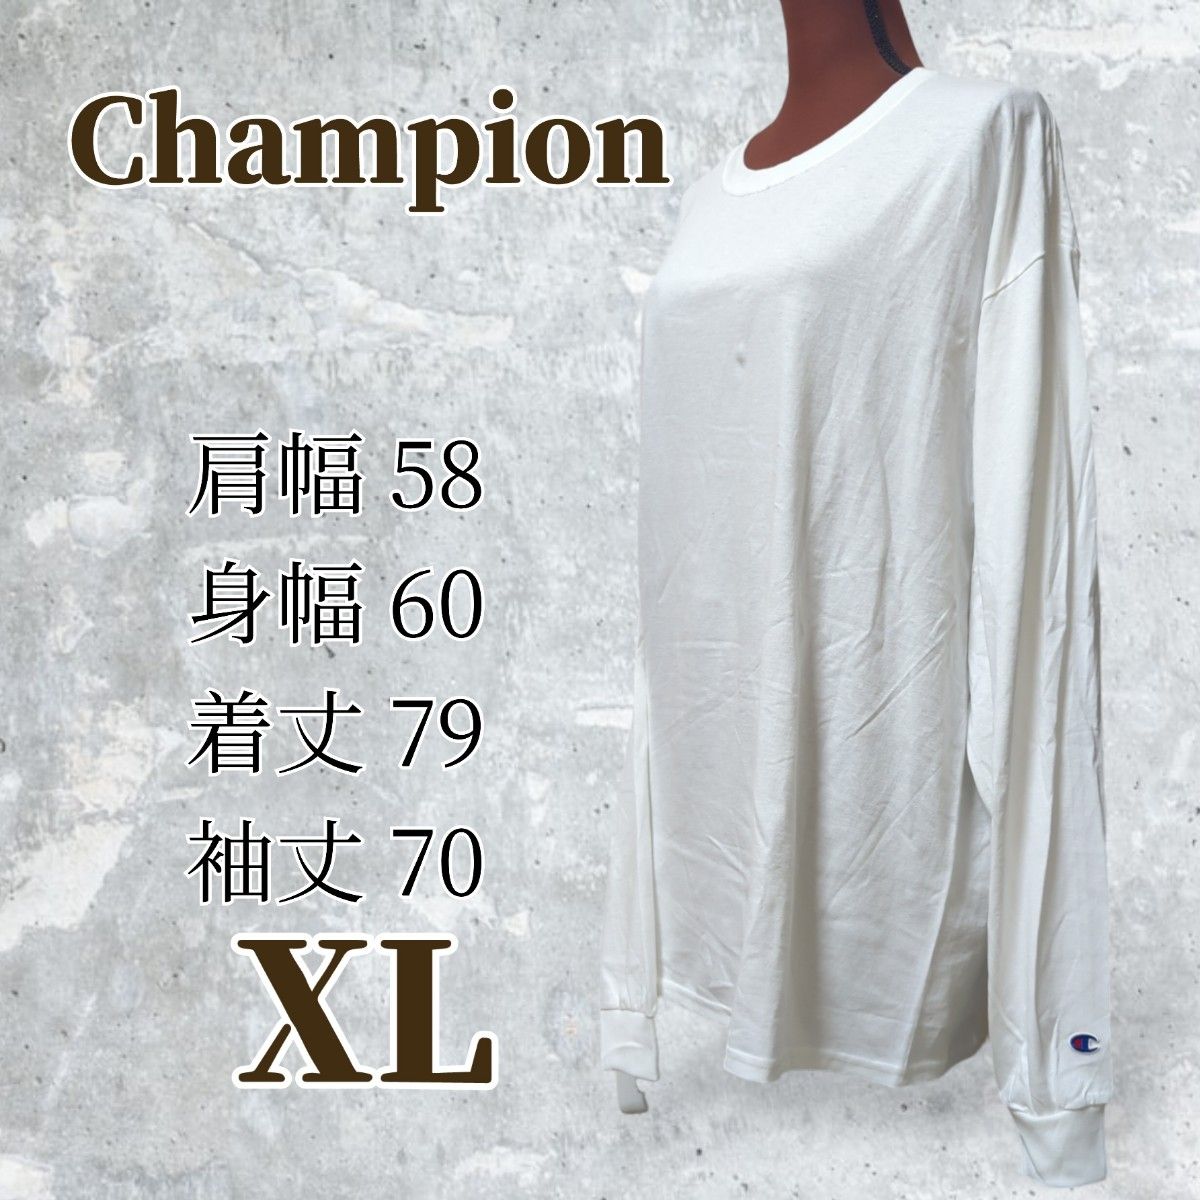 週末激安商品【Champion】新品タグ無し 袖ロゴ 長袖Tシャツ サイズXL